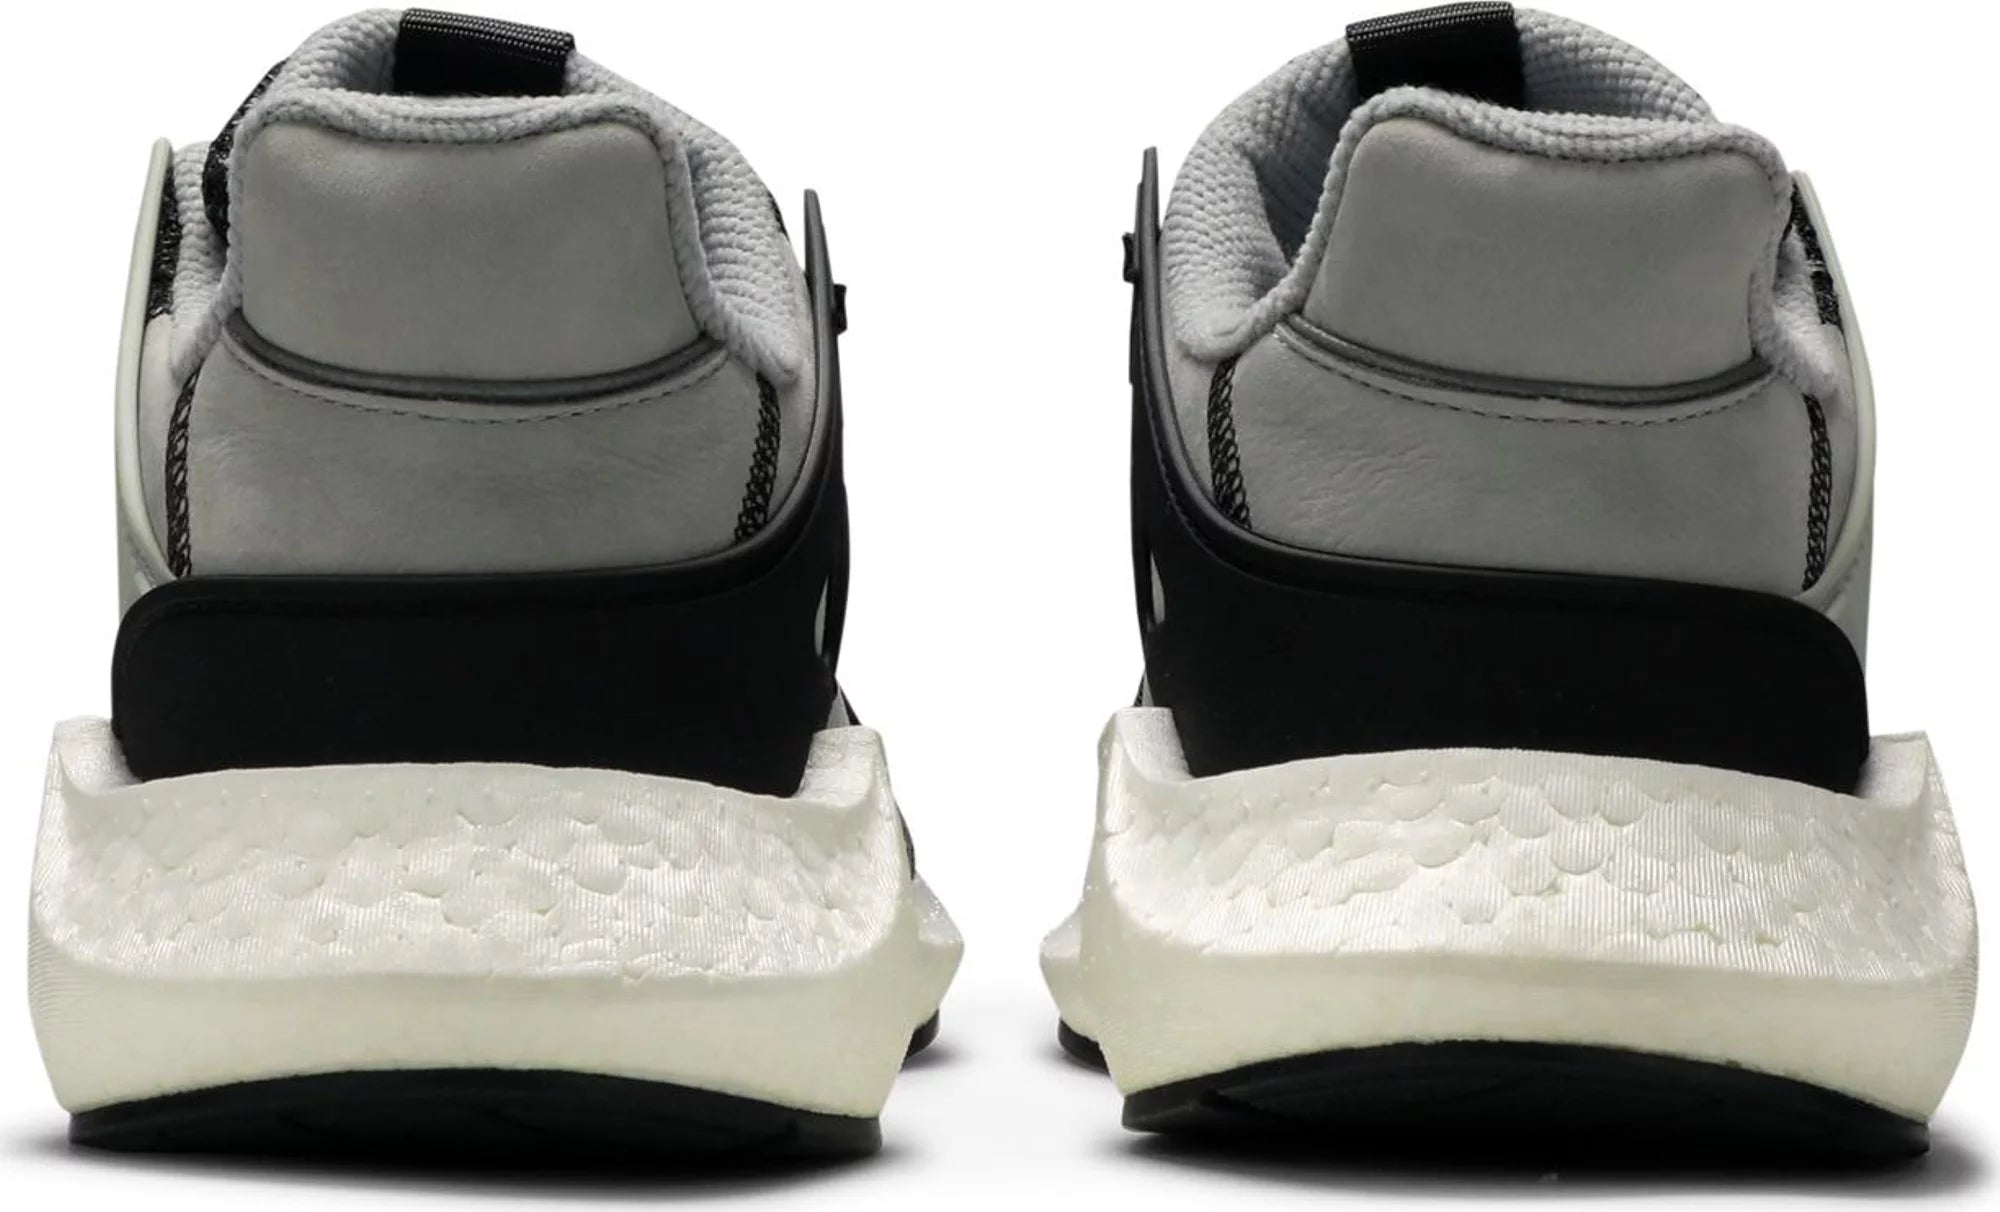 Sneakersy Adidas EQT Support Future Overkill Coat of Arms - dynamiczne i stylowe obuwie o odważnym designie. Zdjęcie przedstawia tenisówki w widoku z tyłu, podkreślając unikalną grafikę z herbem na cholewce. Trampki charakteryzują się wygodnym krojem i wysokiej jakości konstrukcją, dzięki czemu są idealnym wyborem zarówno dla osób dbających o styl, jak i entuzjastów sneakersów. Wznieś swoją grę w tenisa dzięki tym przyciągającym wzrok tenisówkom adidas EQT.